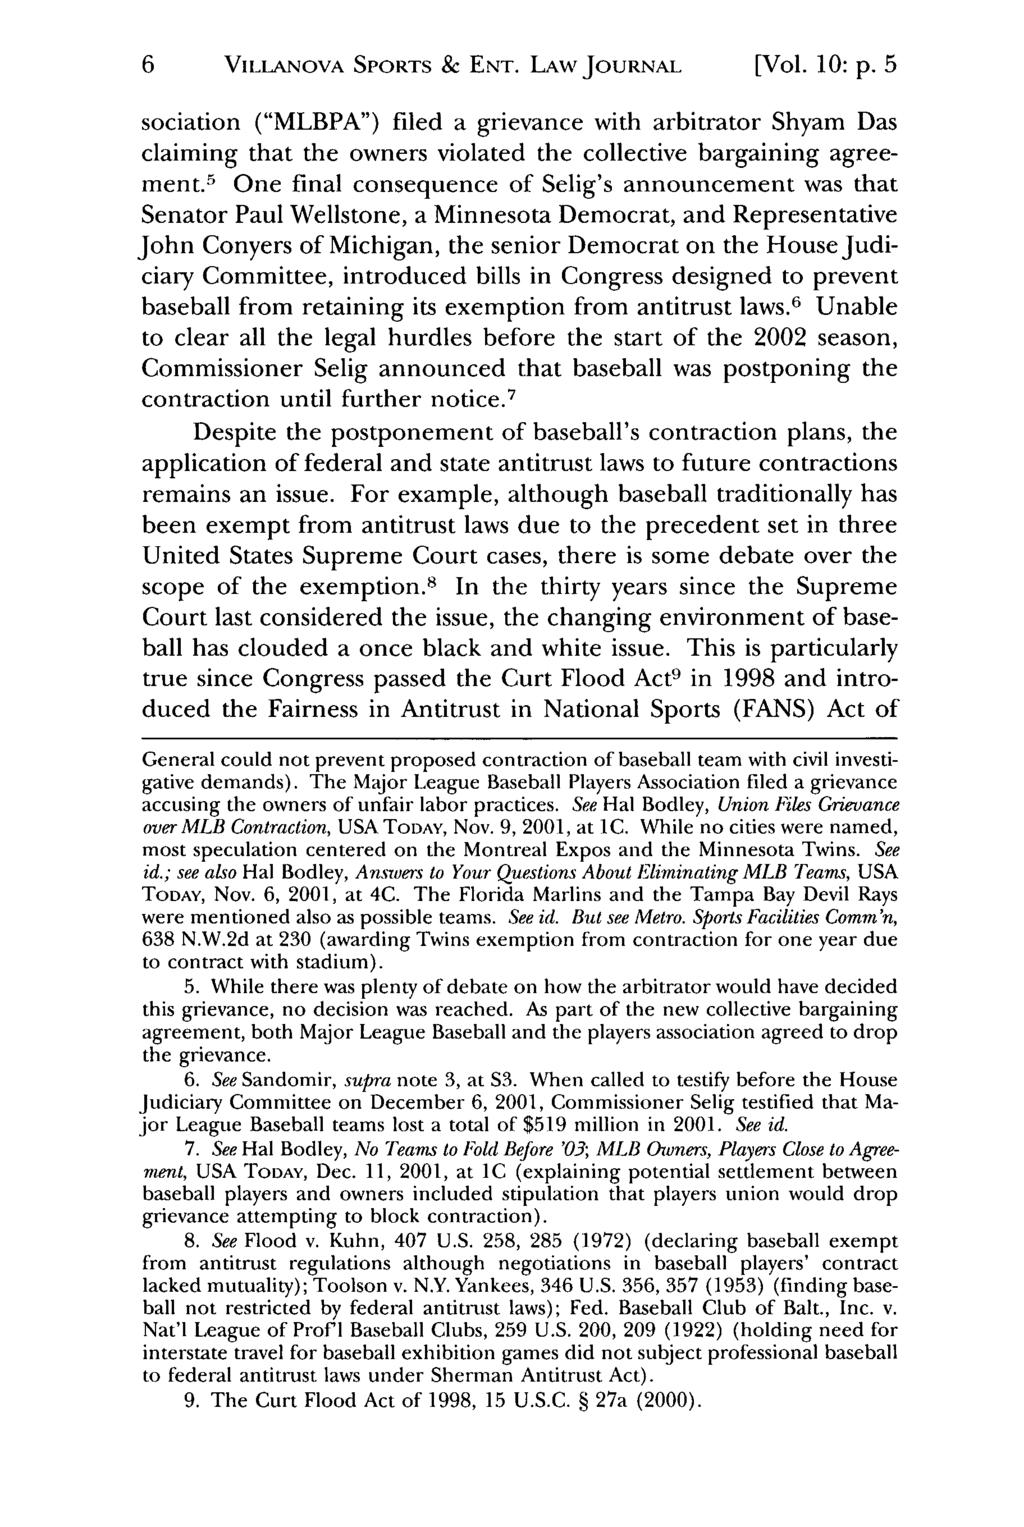 6 VILLANovA Jeffrey S. Moorad SPORTS Sports & Law ENT. Journal, LAW Vol. 10, JOURNAL Iss. 1 [2003], Art. 2 [Vol. 10: p.